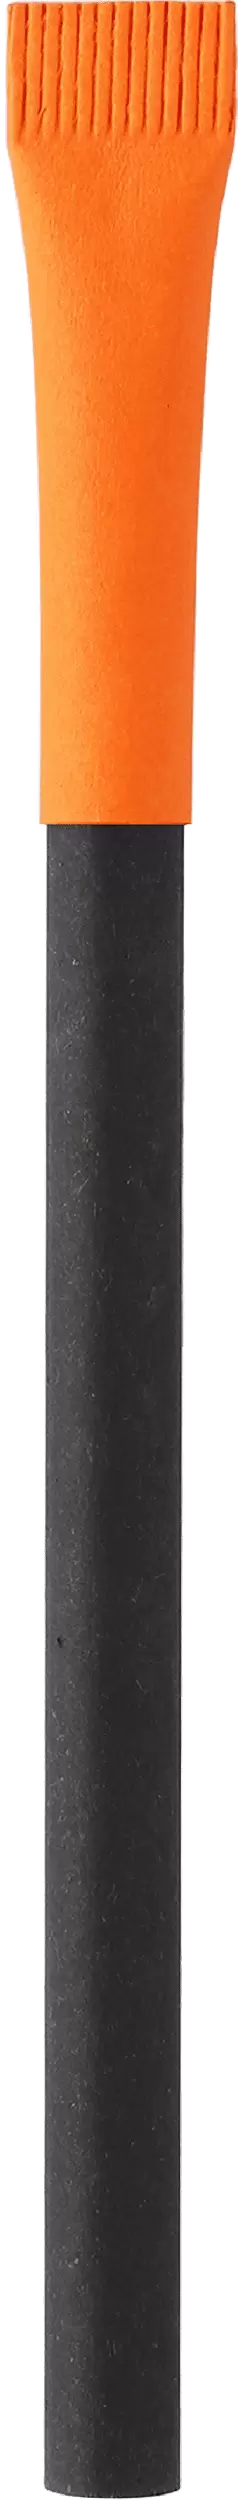 Ручка KRAFT MIX Черная с оранжевым 3011-08-05